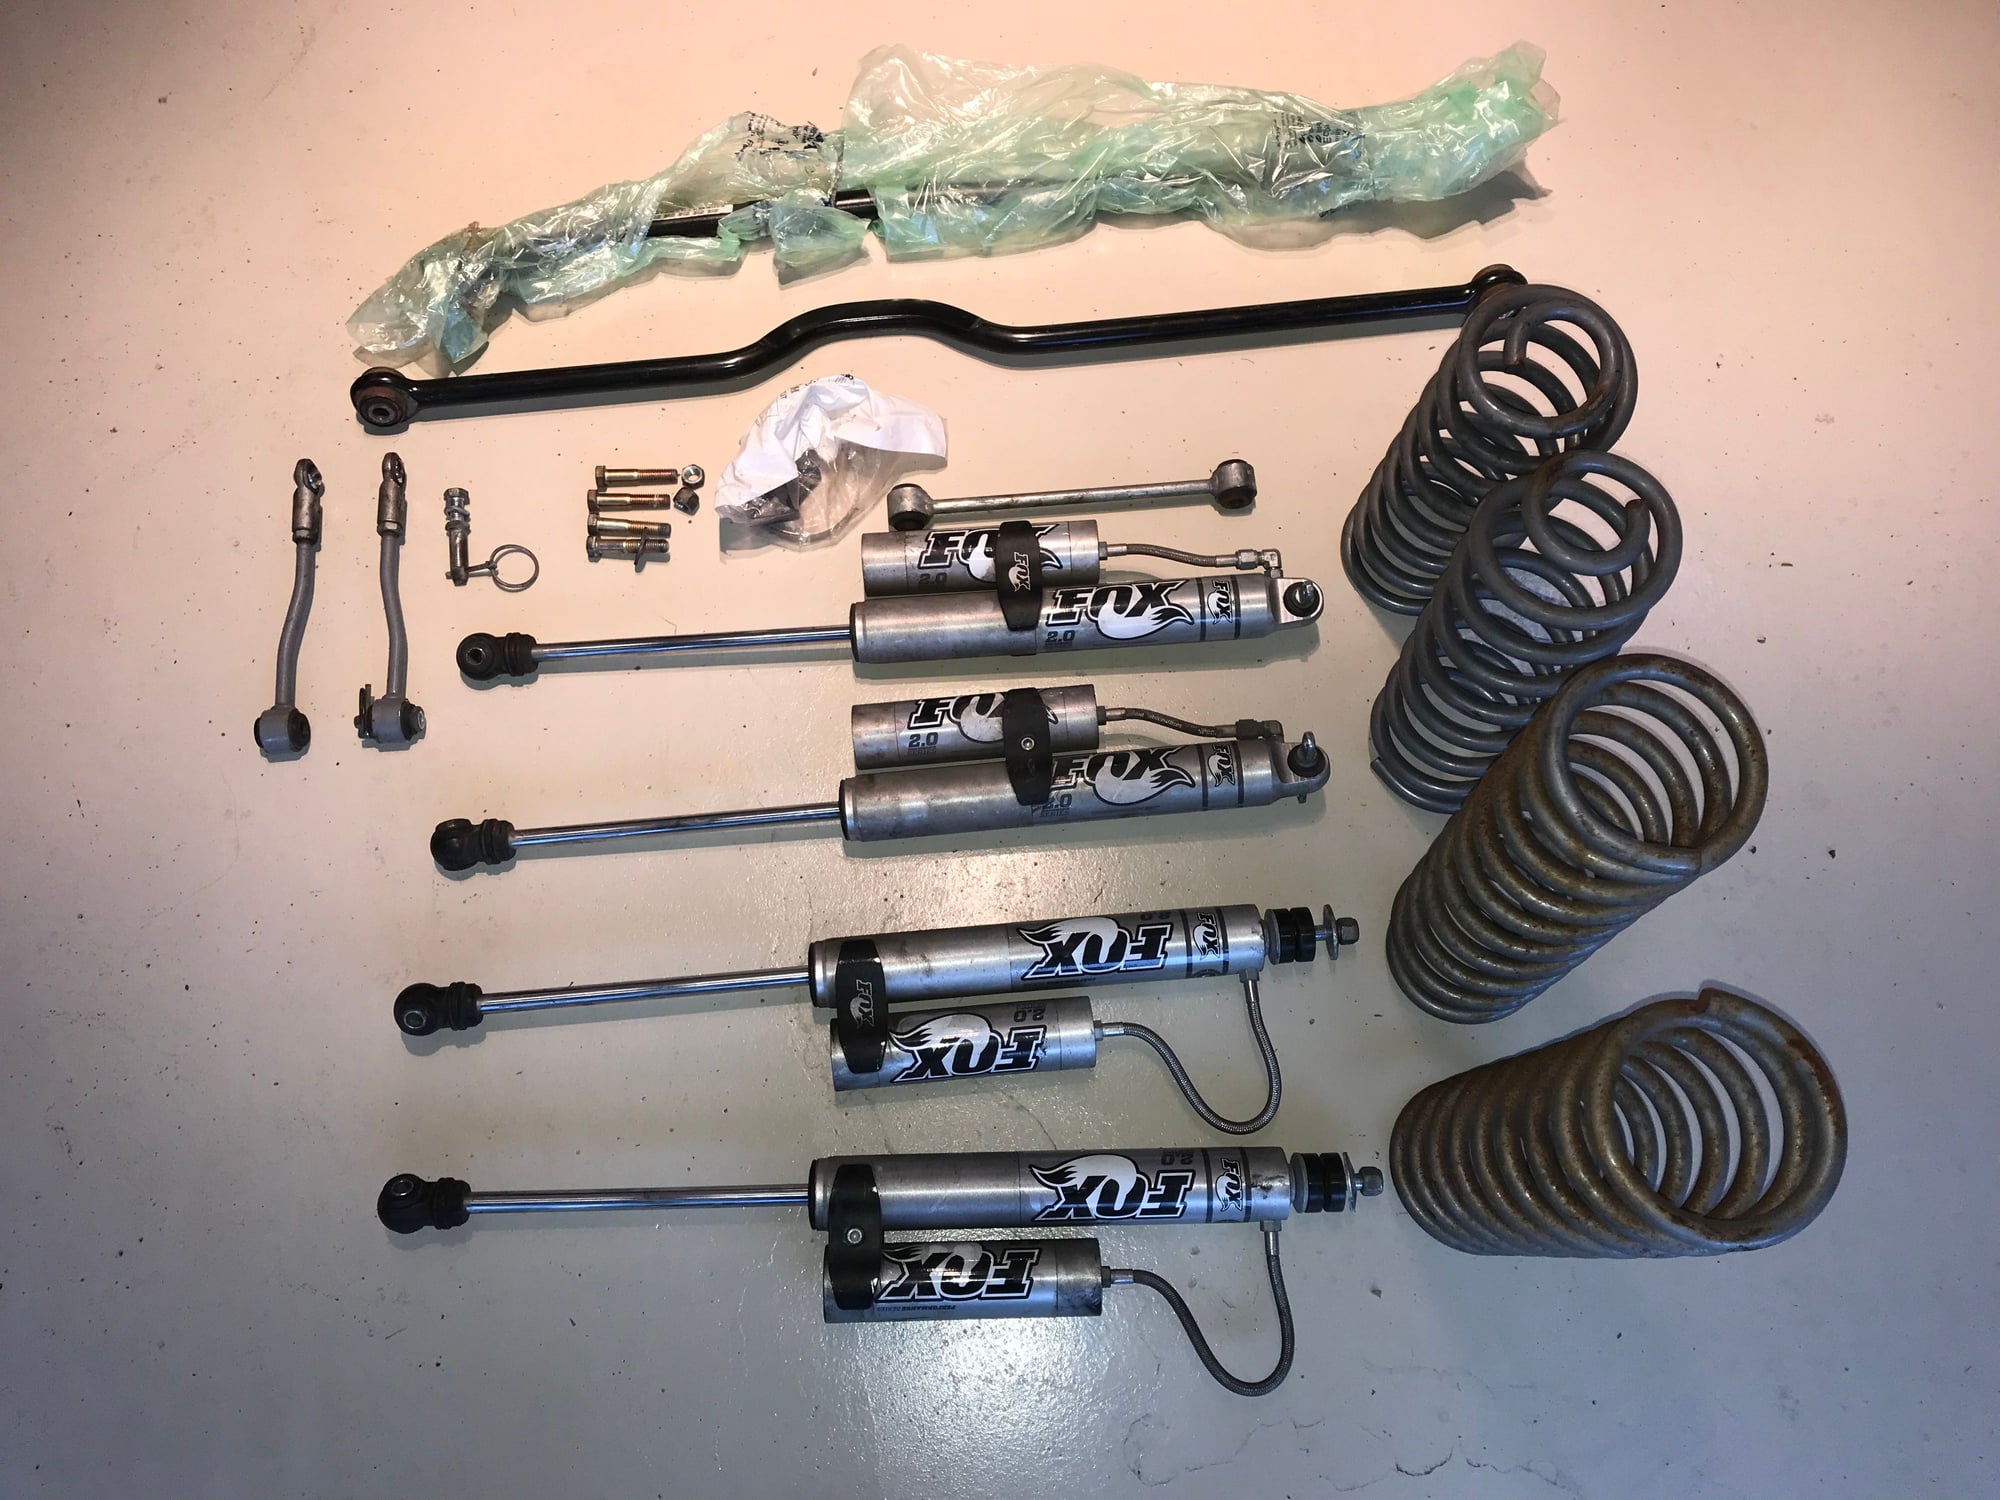 Steering/Suspension - 2.5 lift kit with FOX shocks - Used - La, CA 90077, United States